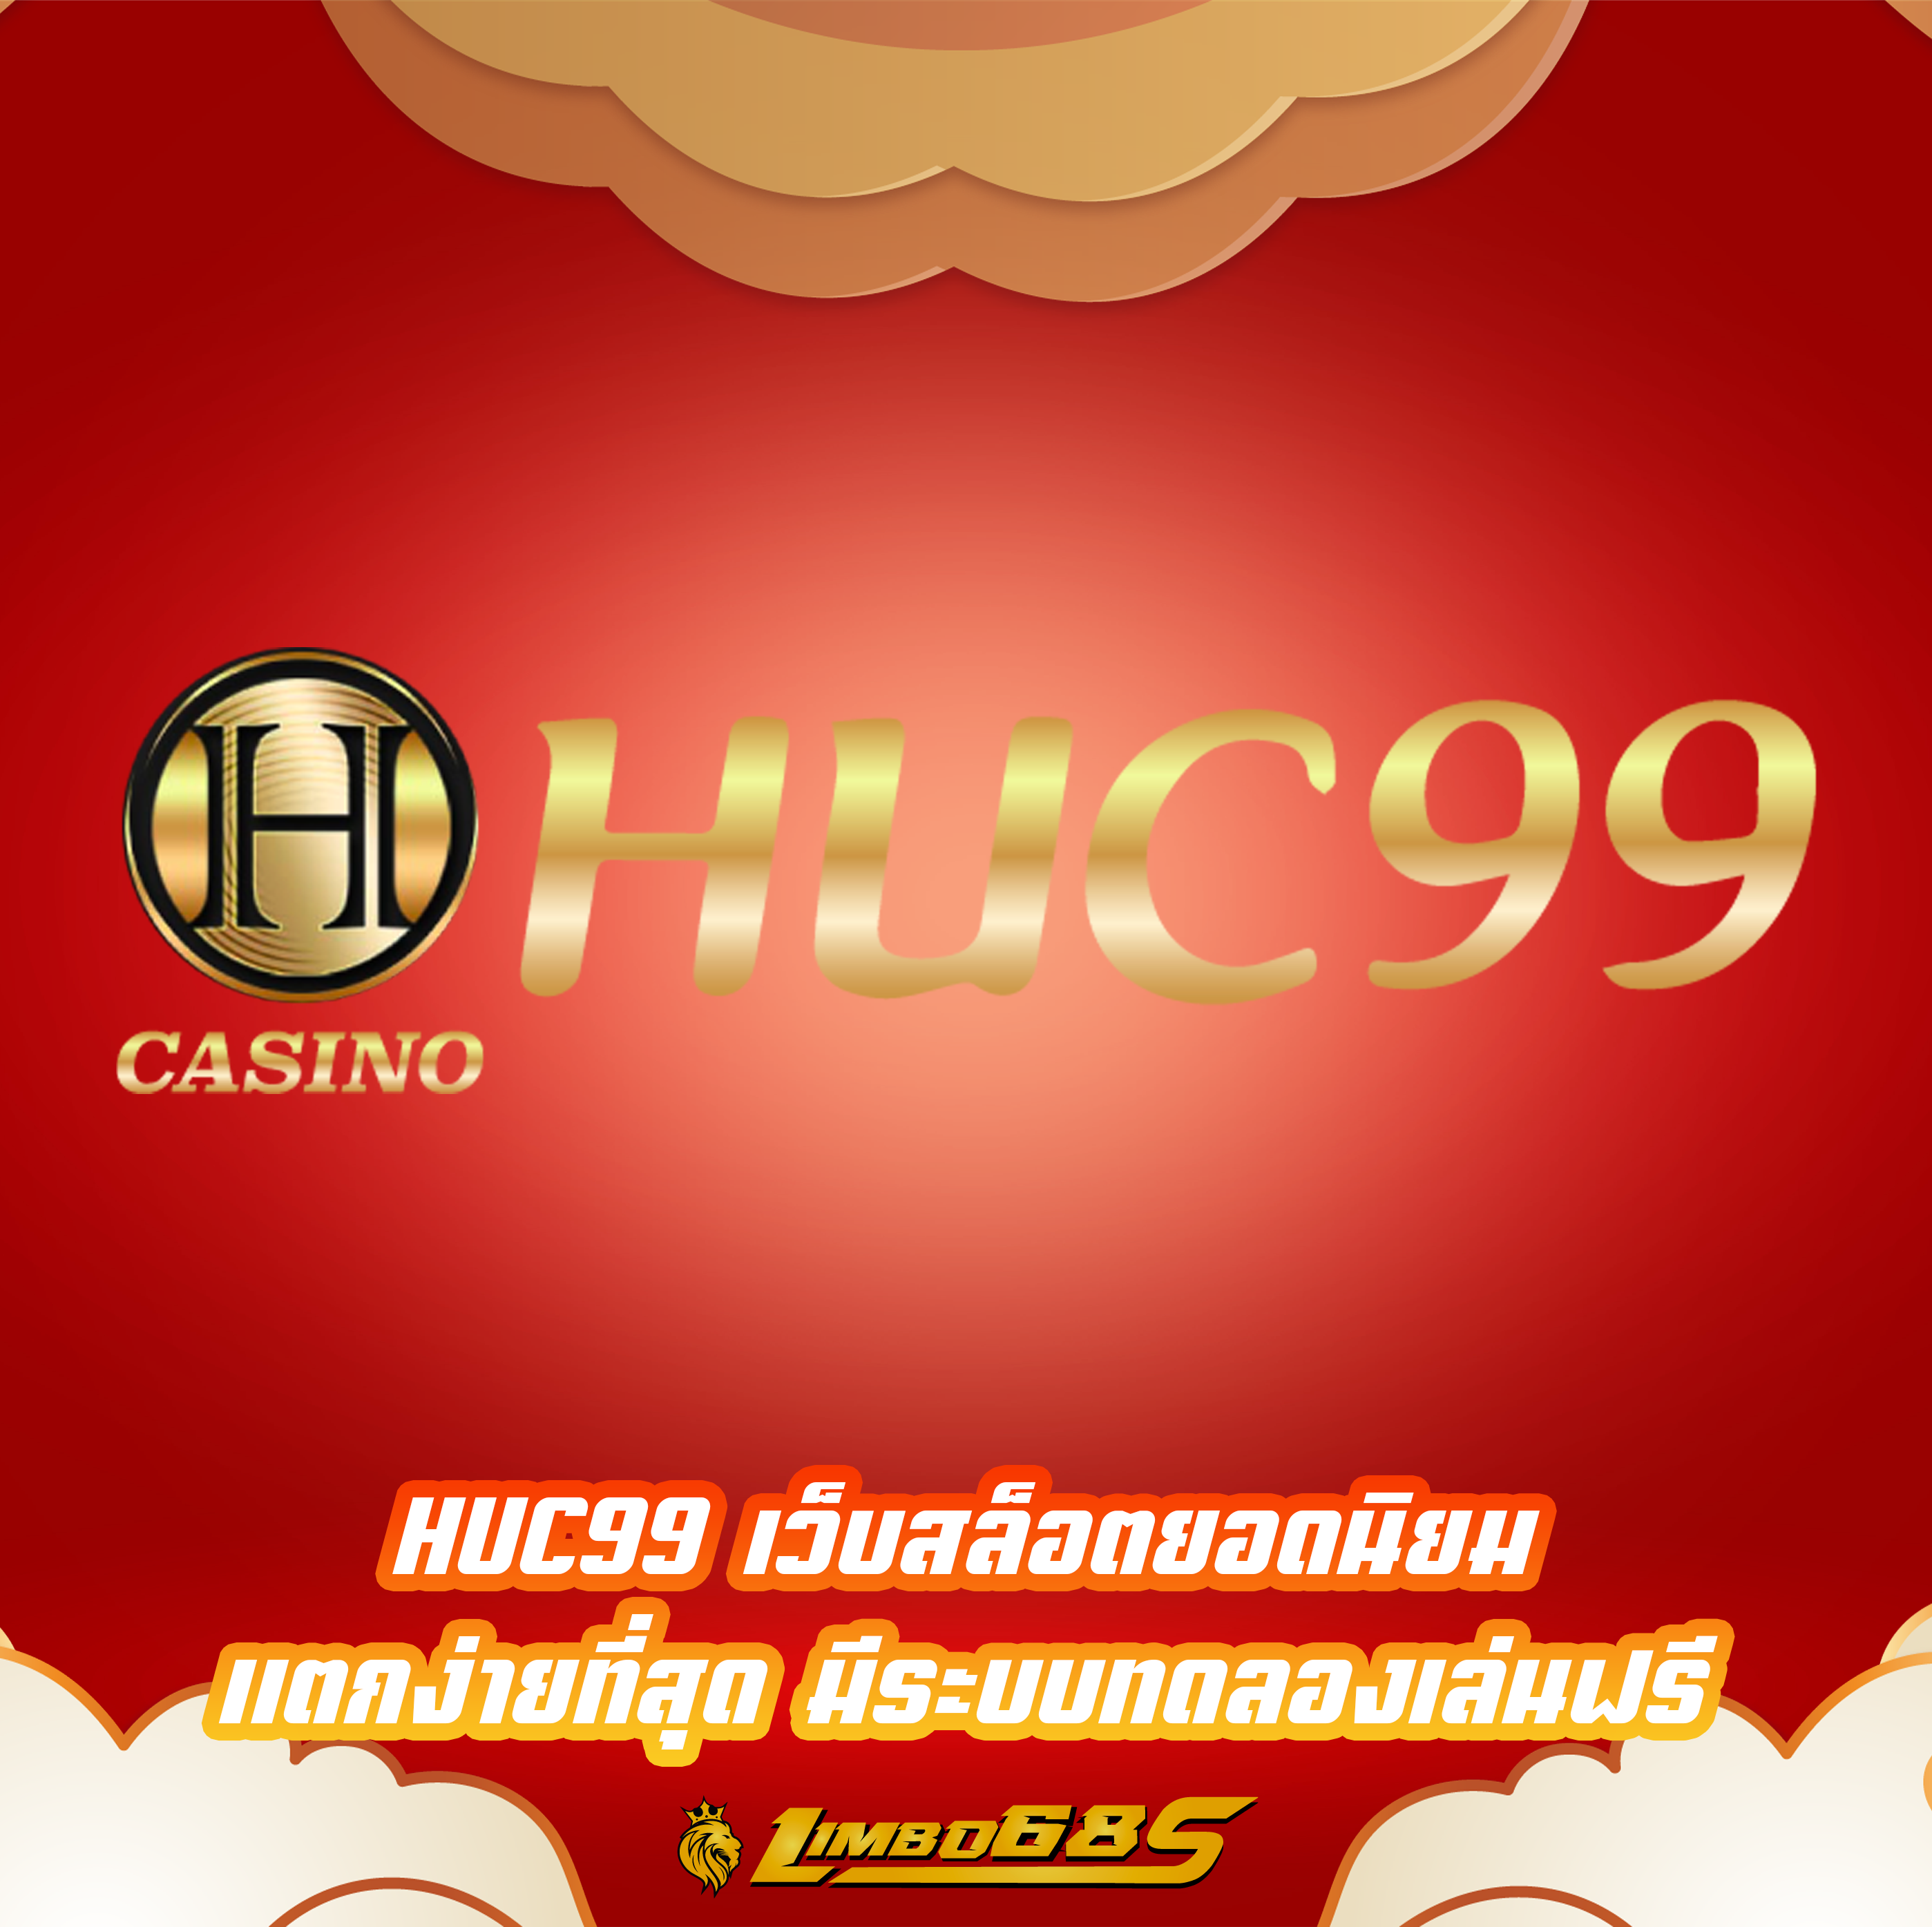 HUC99 เว็บสล็อตยอดนิยม แตกง่ายที่สุด มีระบบทดลองเล่นฟรี